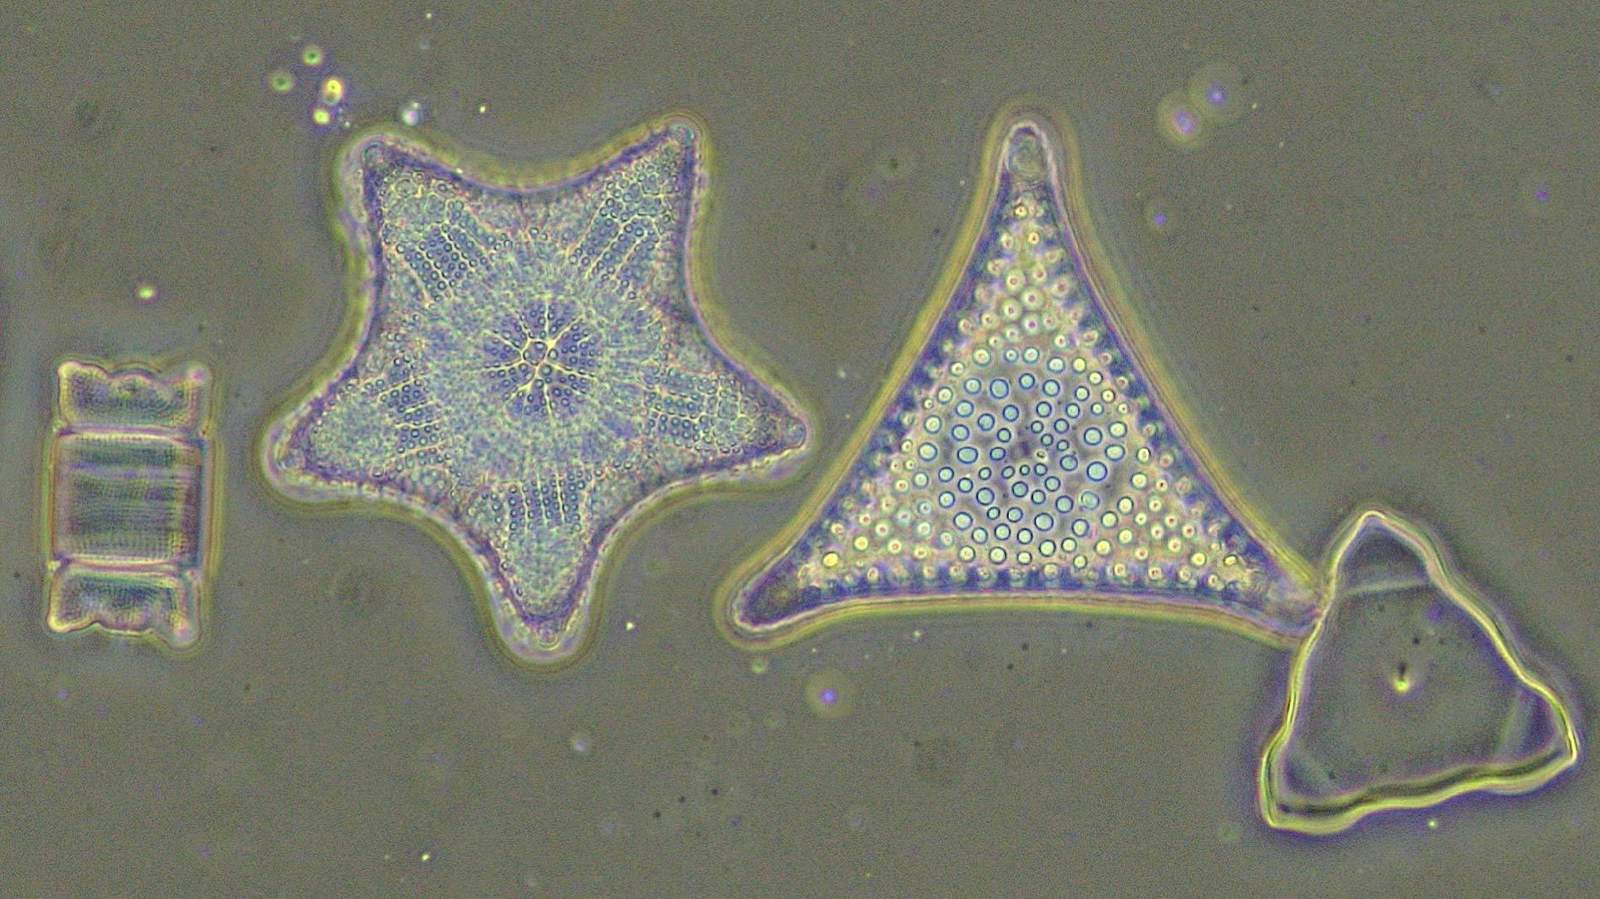 ニコン顕微鏡Eclipse Si サンプル画像 珪藻、無染色